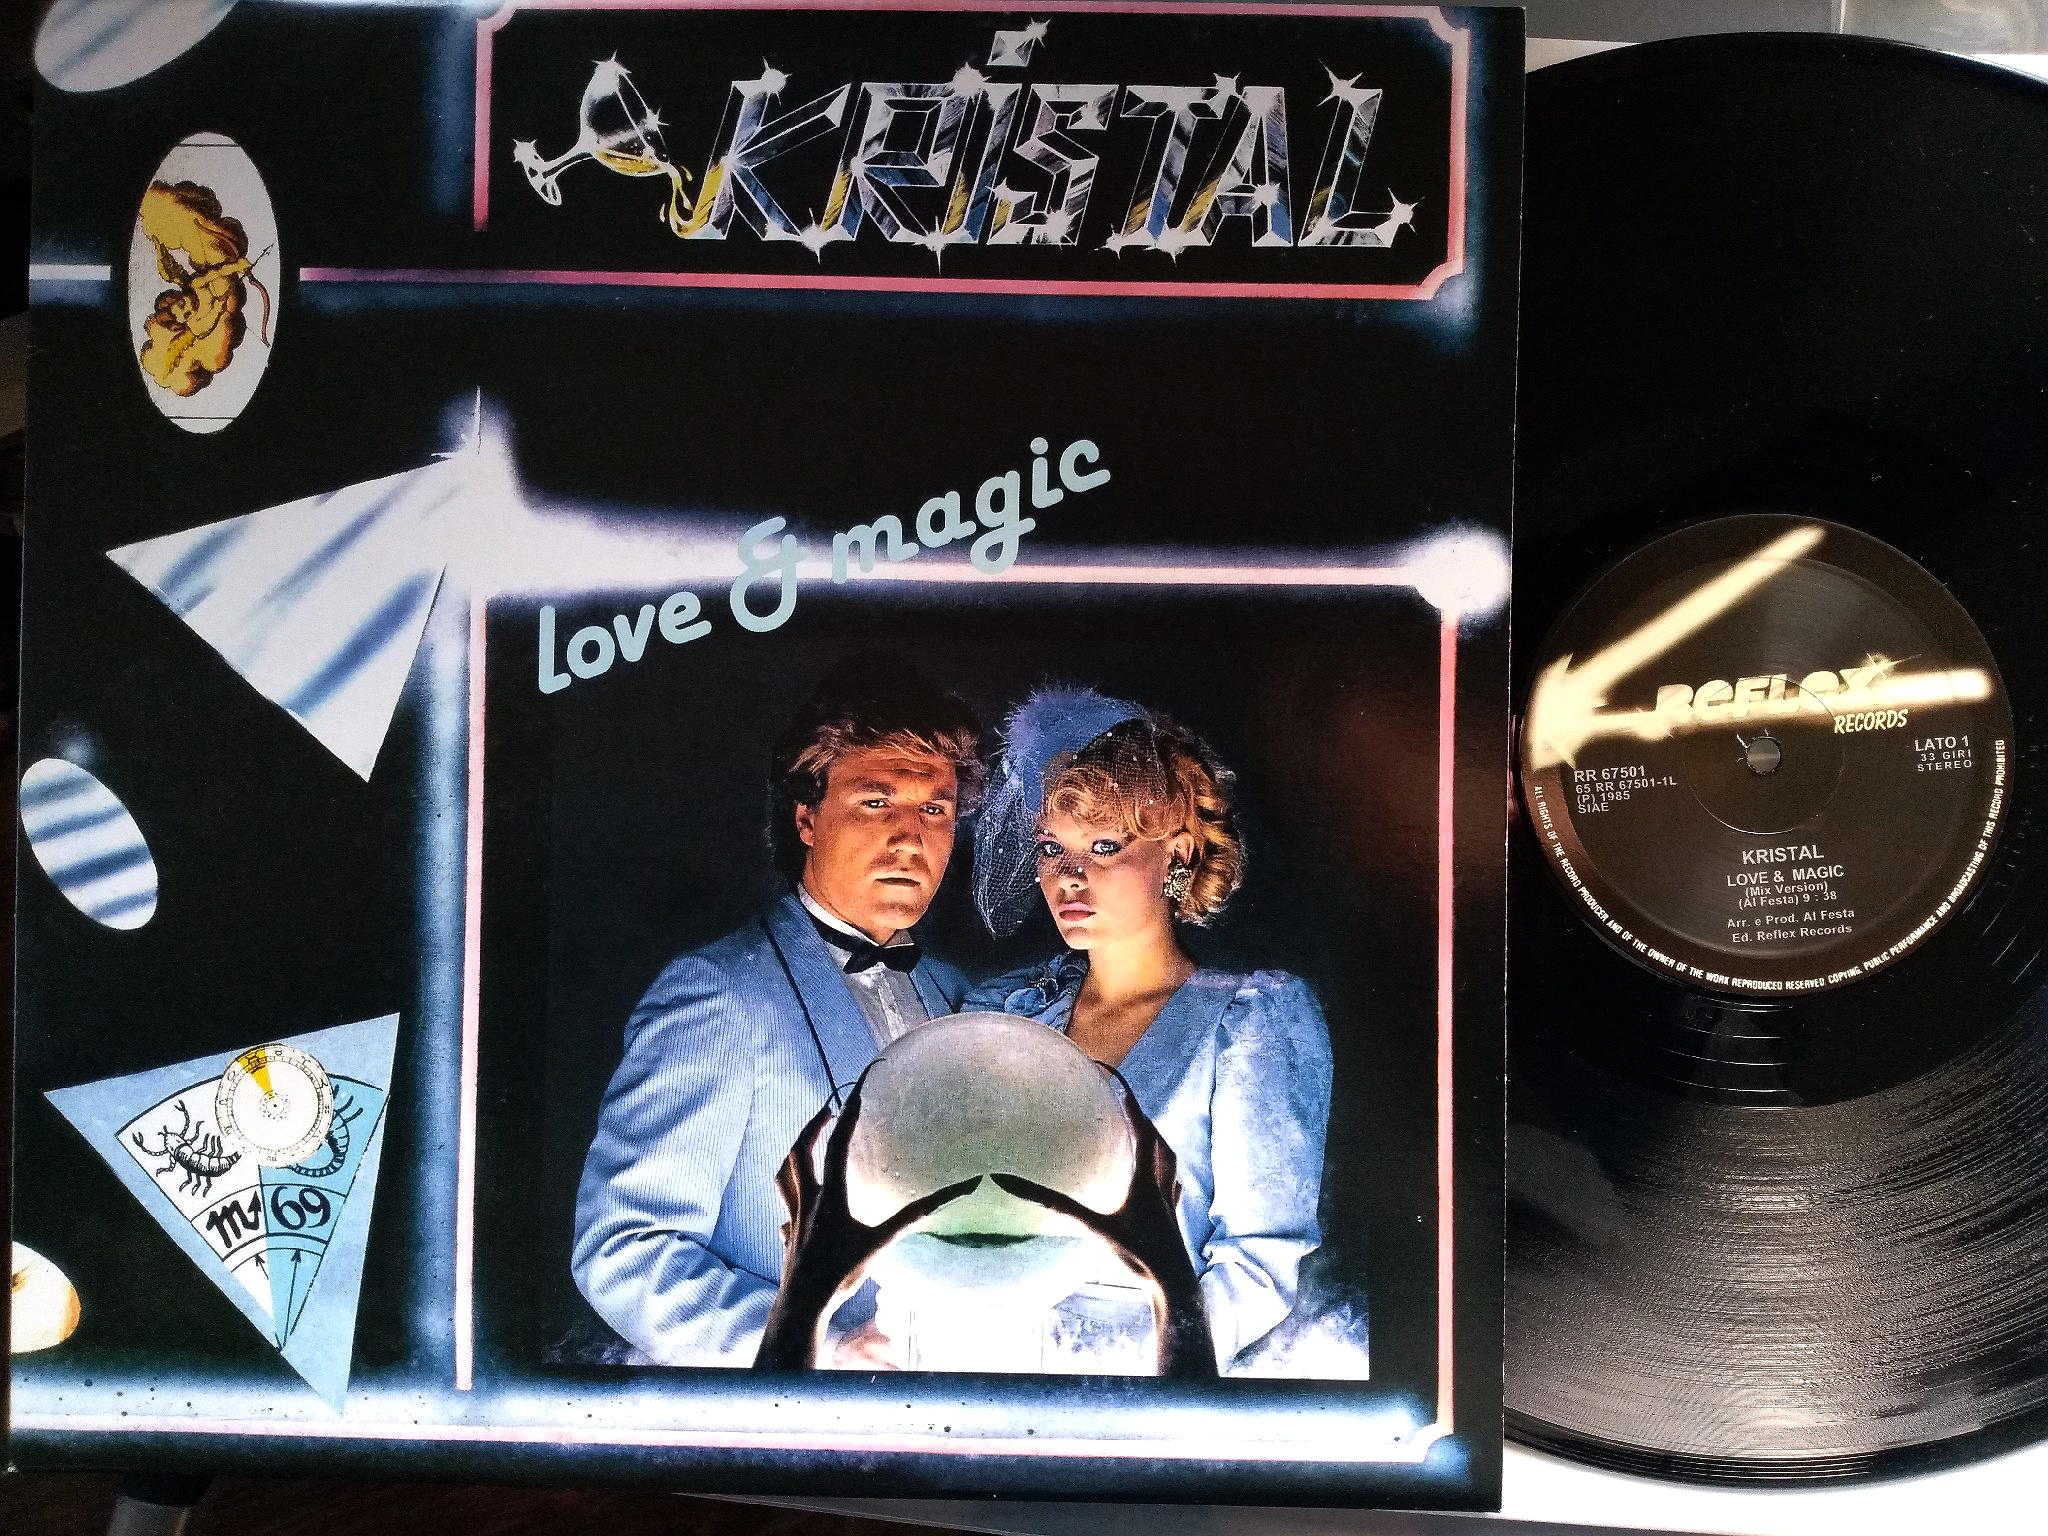 Kristal - Love and Magik